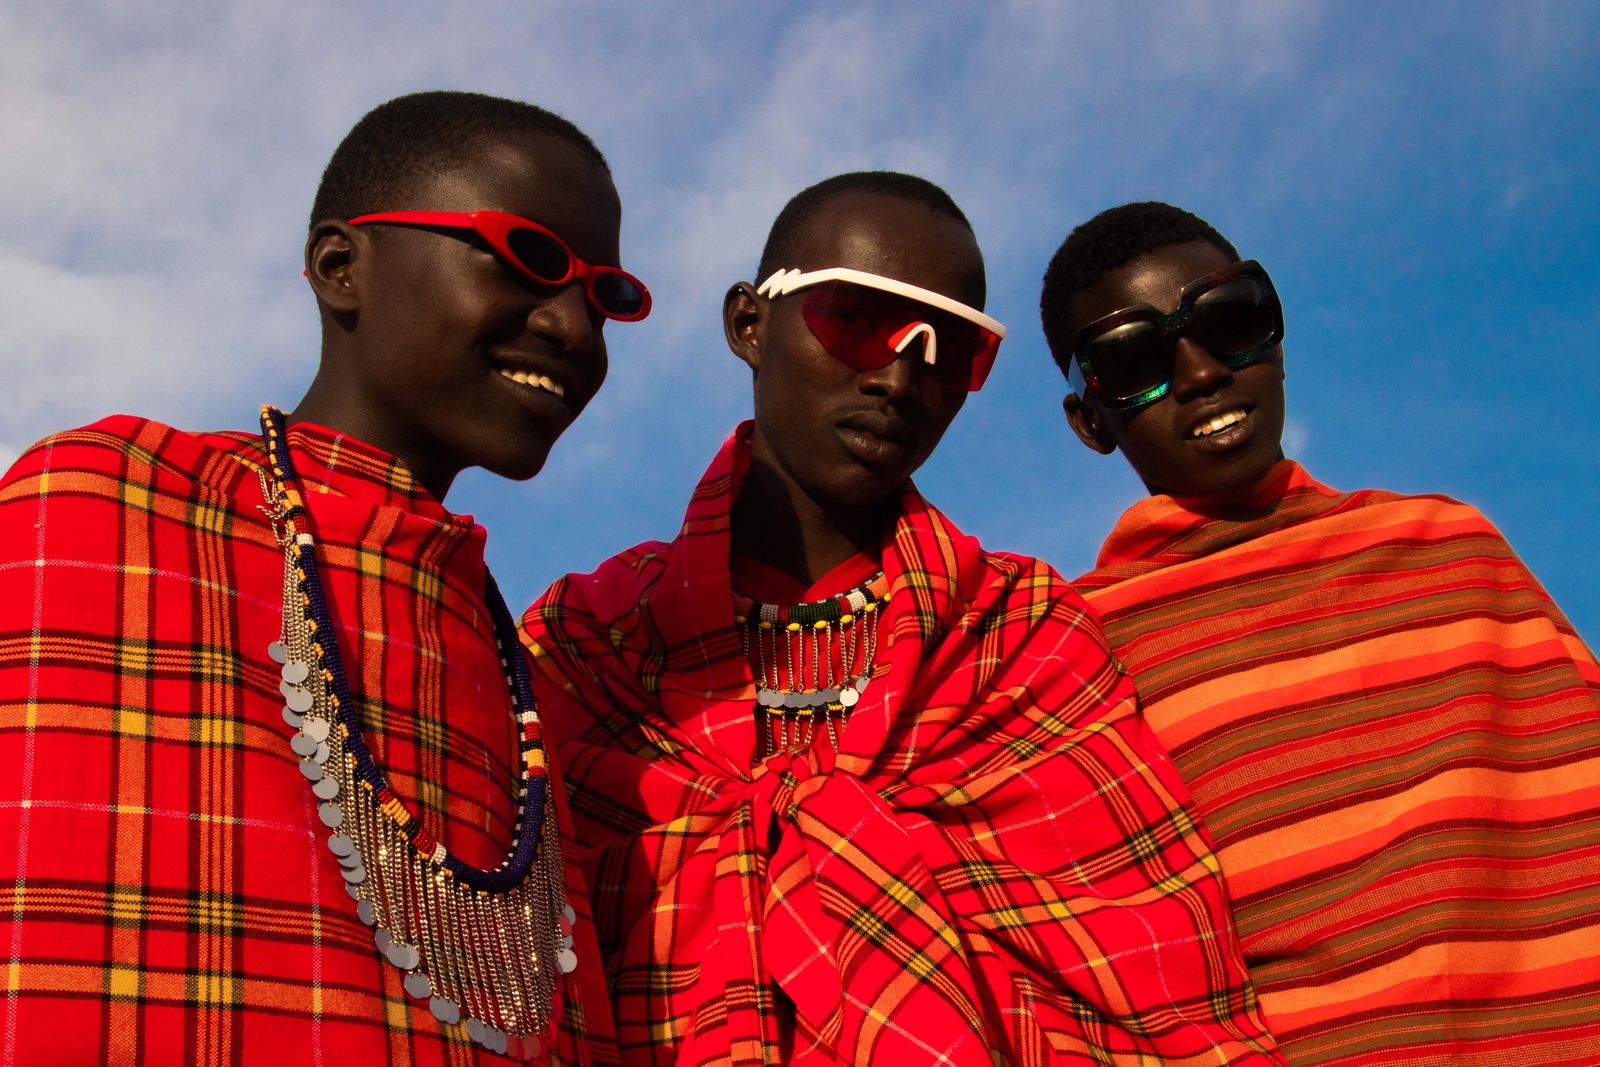 © Nwando Ebeledike - Members of the Massai Mara Community, Kenya